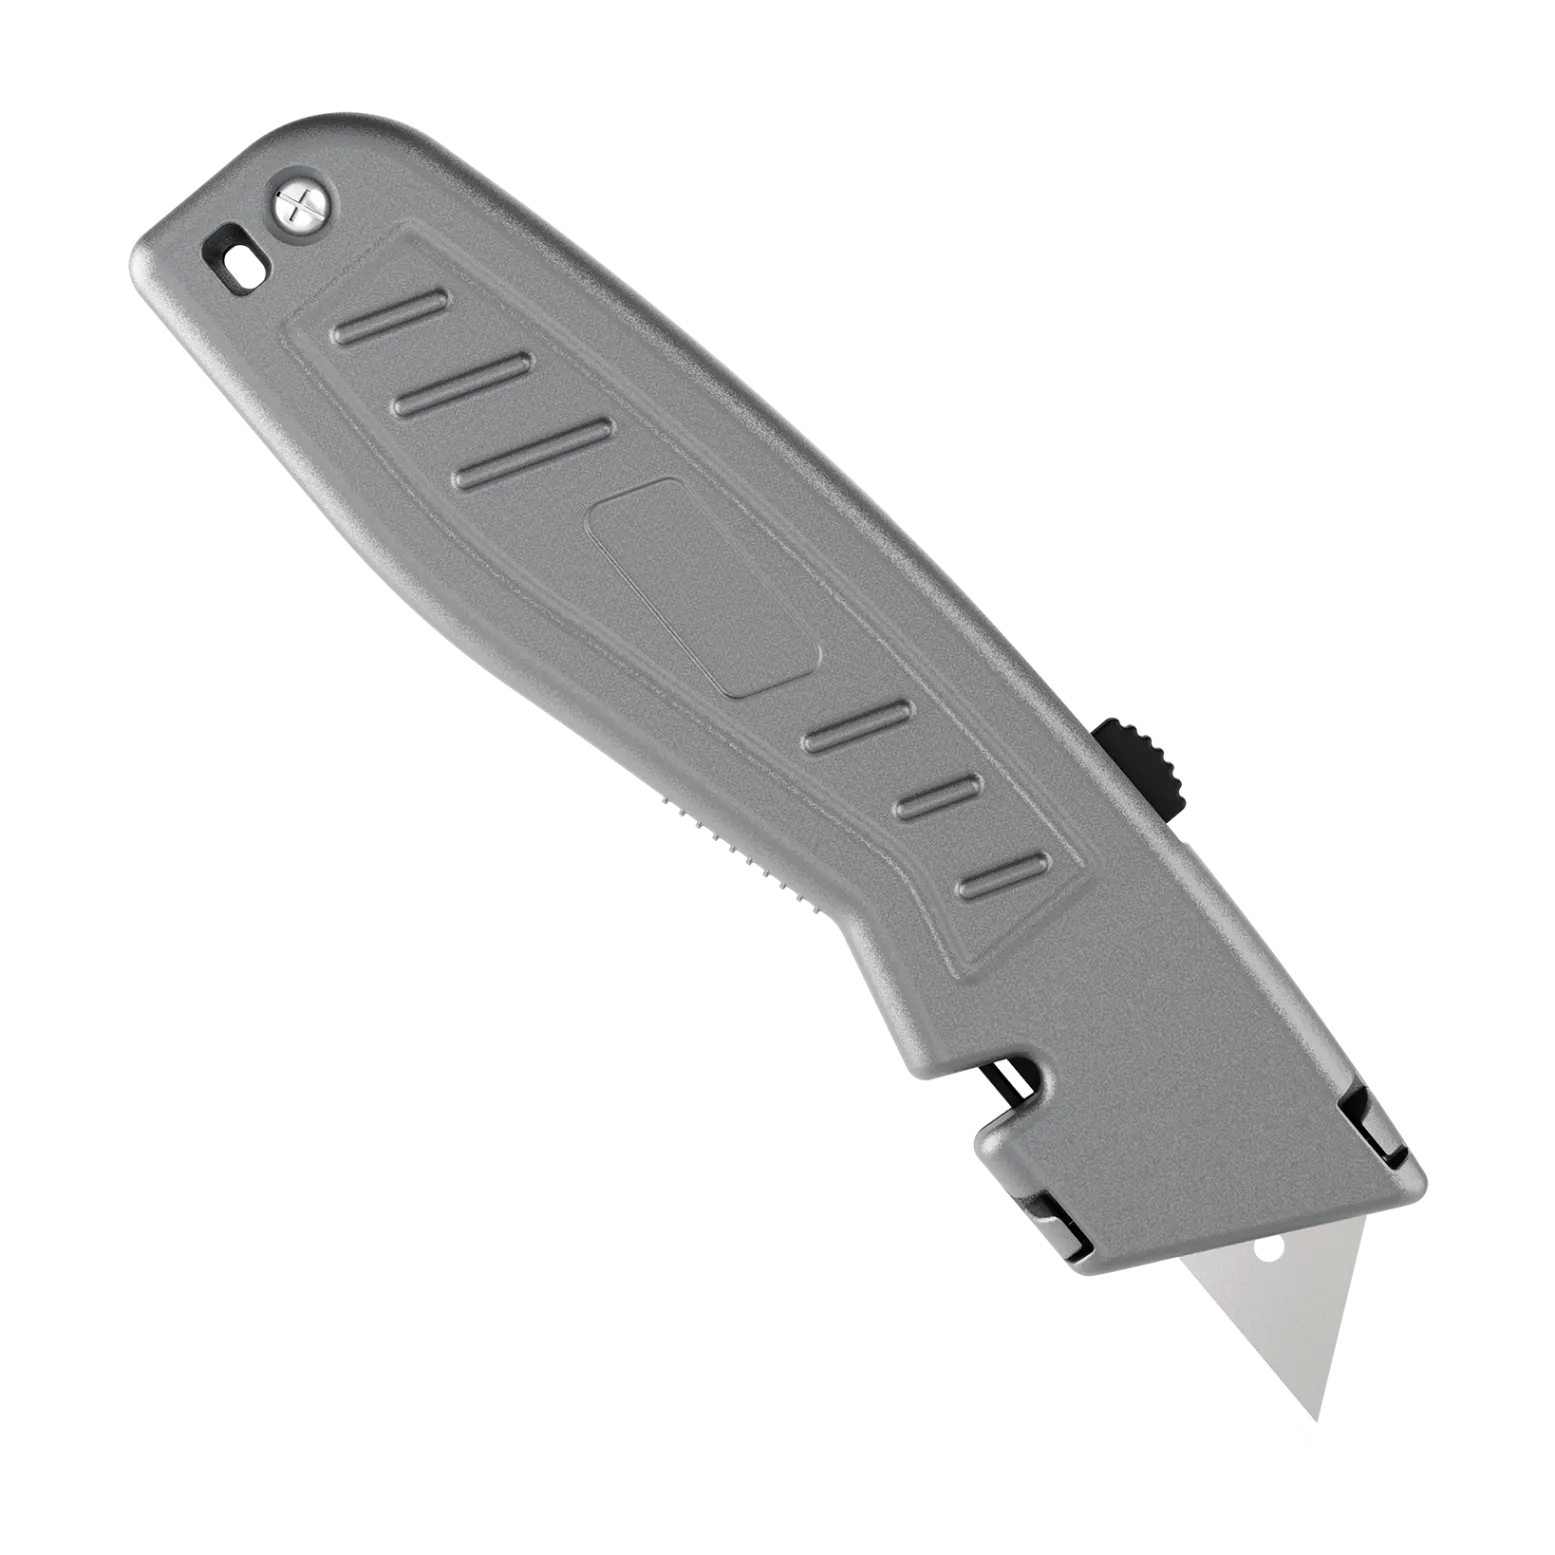 eluk-eruk-06-heavy-duty-utility-knife